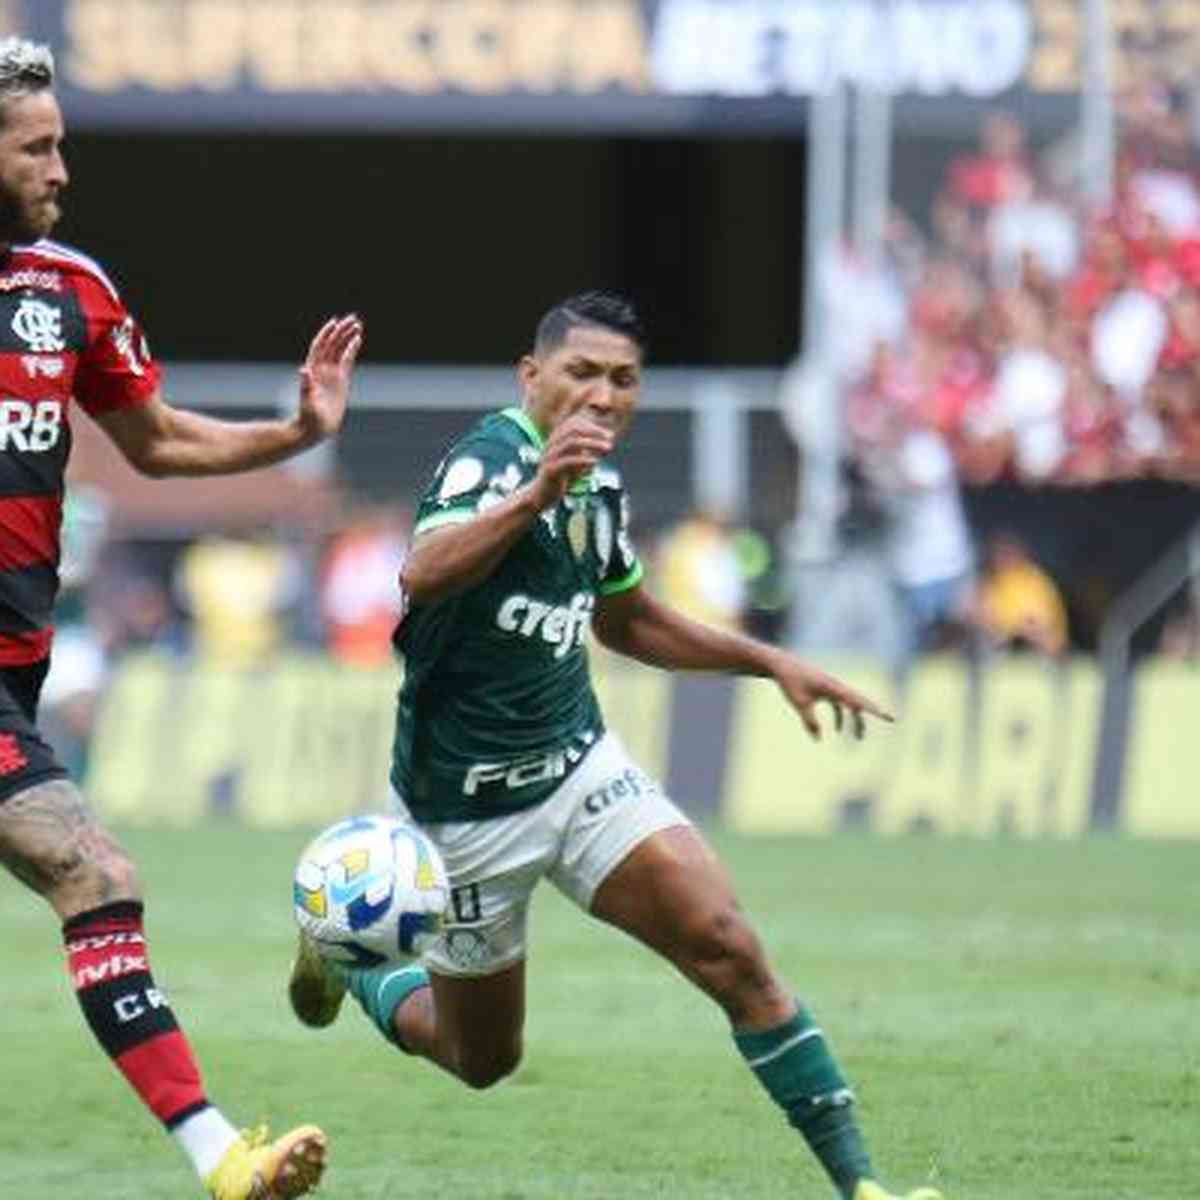 Mundial de Clubes 2025: Palmeiras e Flamengo estão confirmados no novo  torneio após anúncio da Fifa